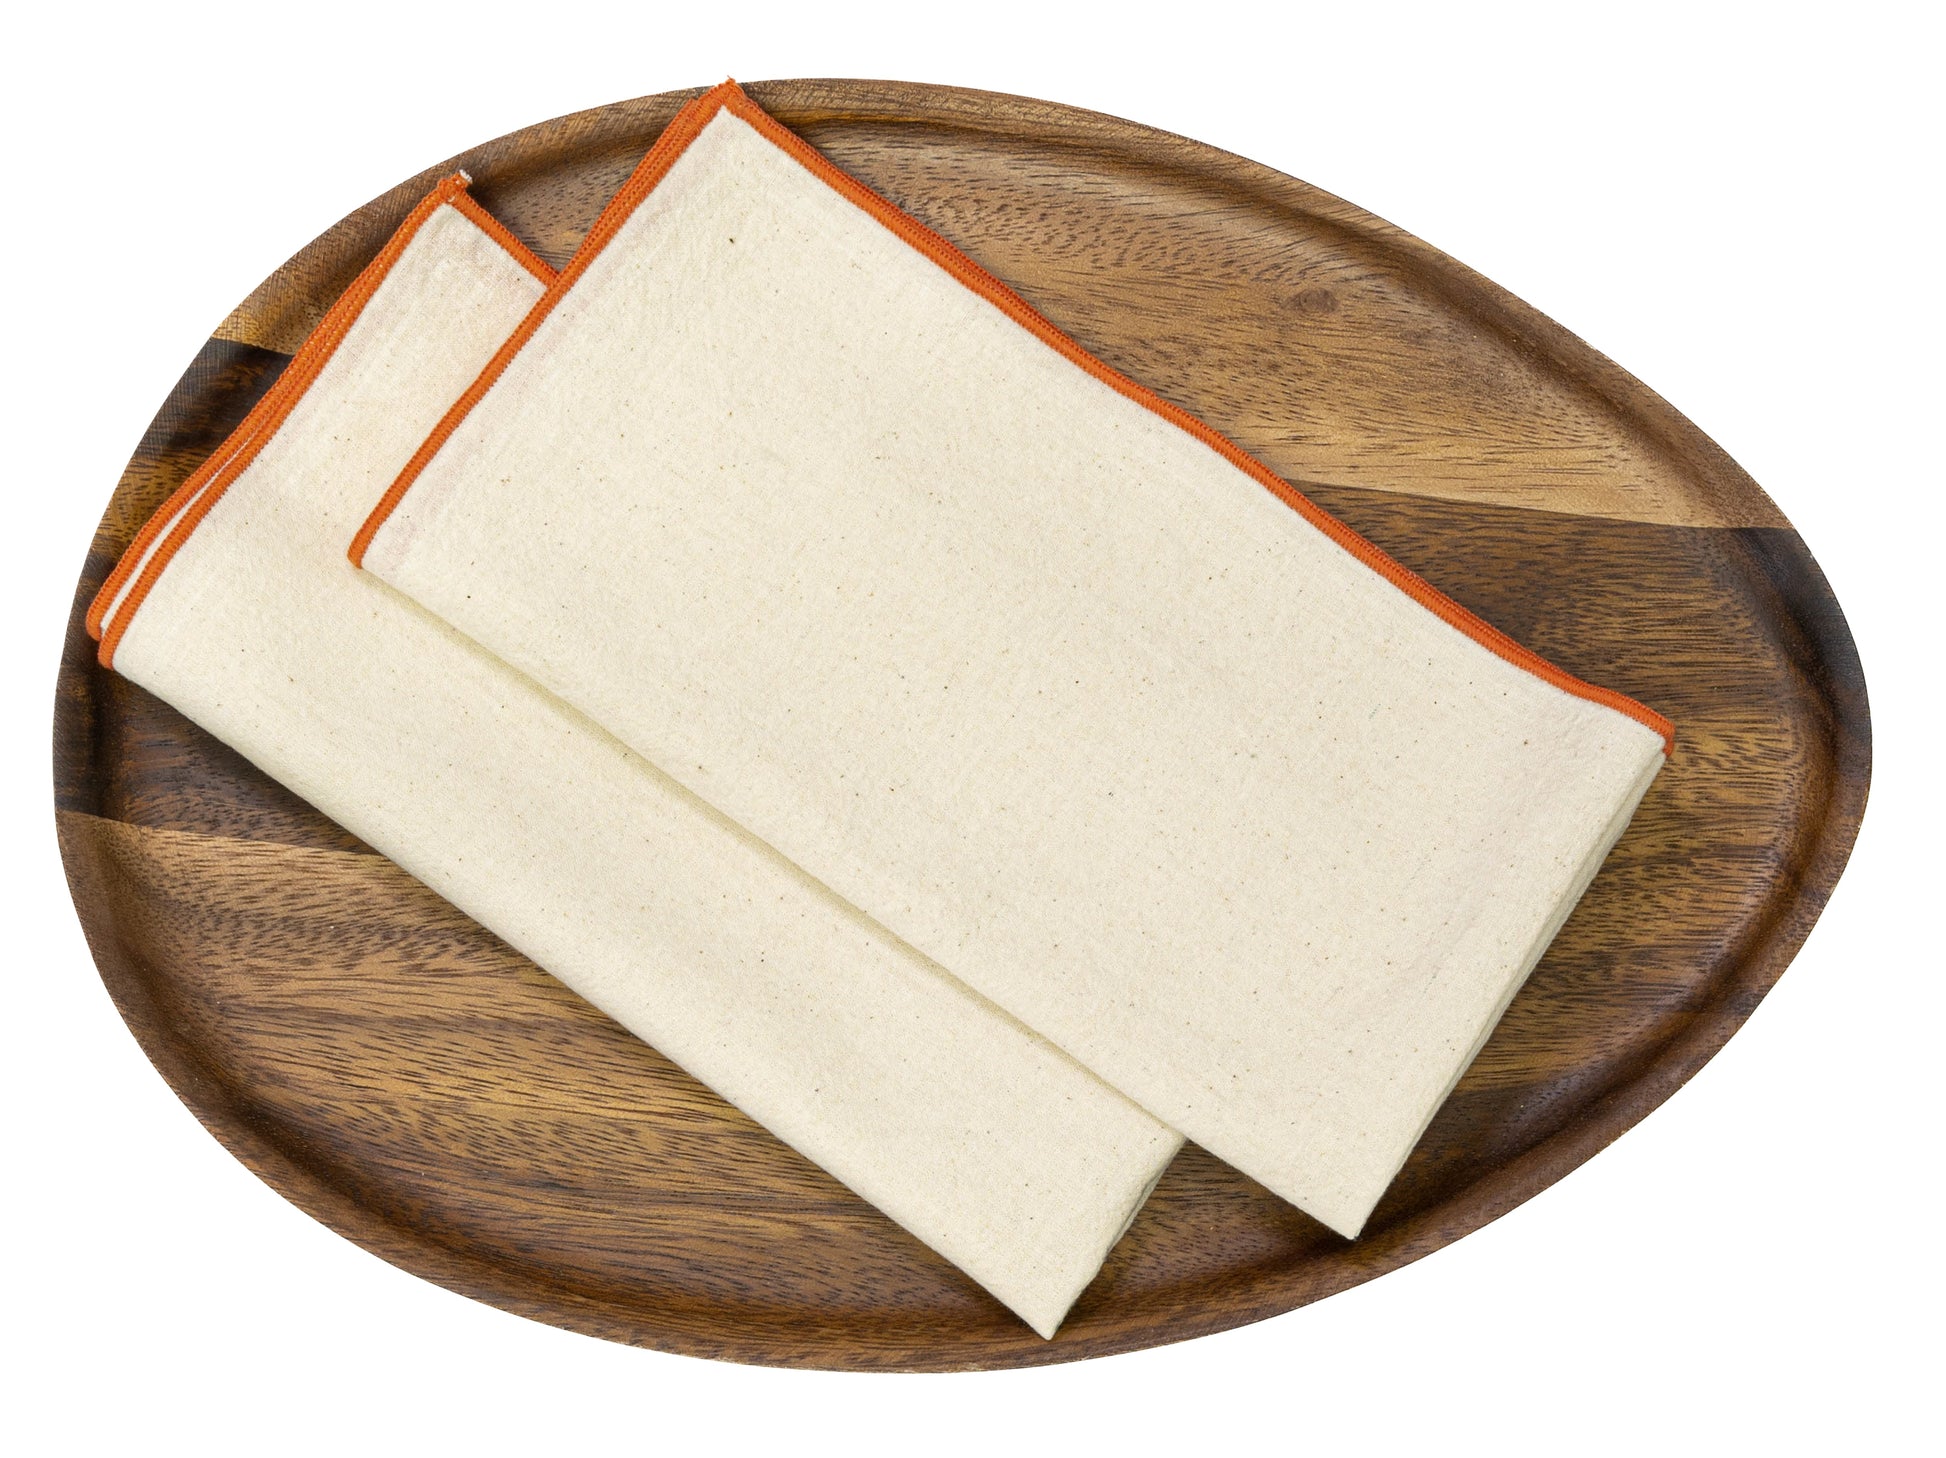 Hand spun cotton table napkin in a Terracotta marrow edge design